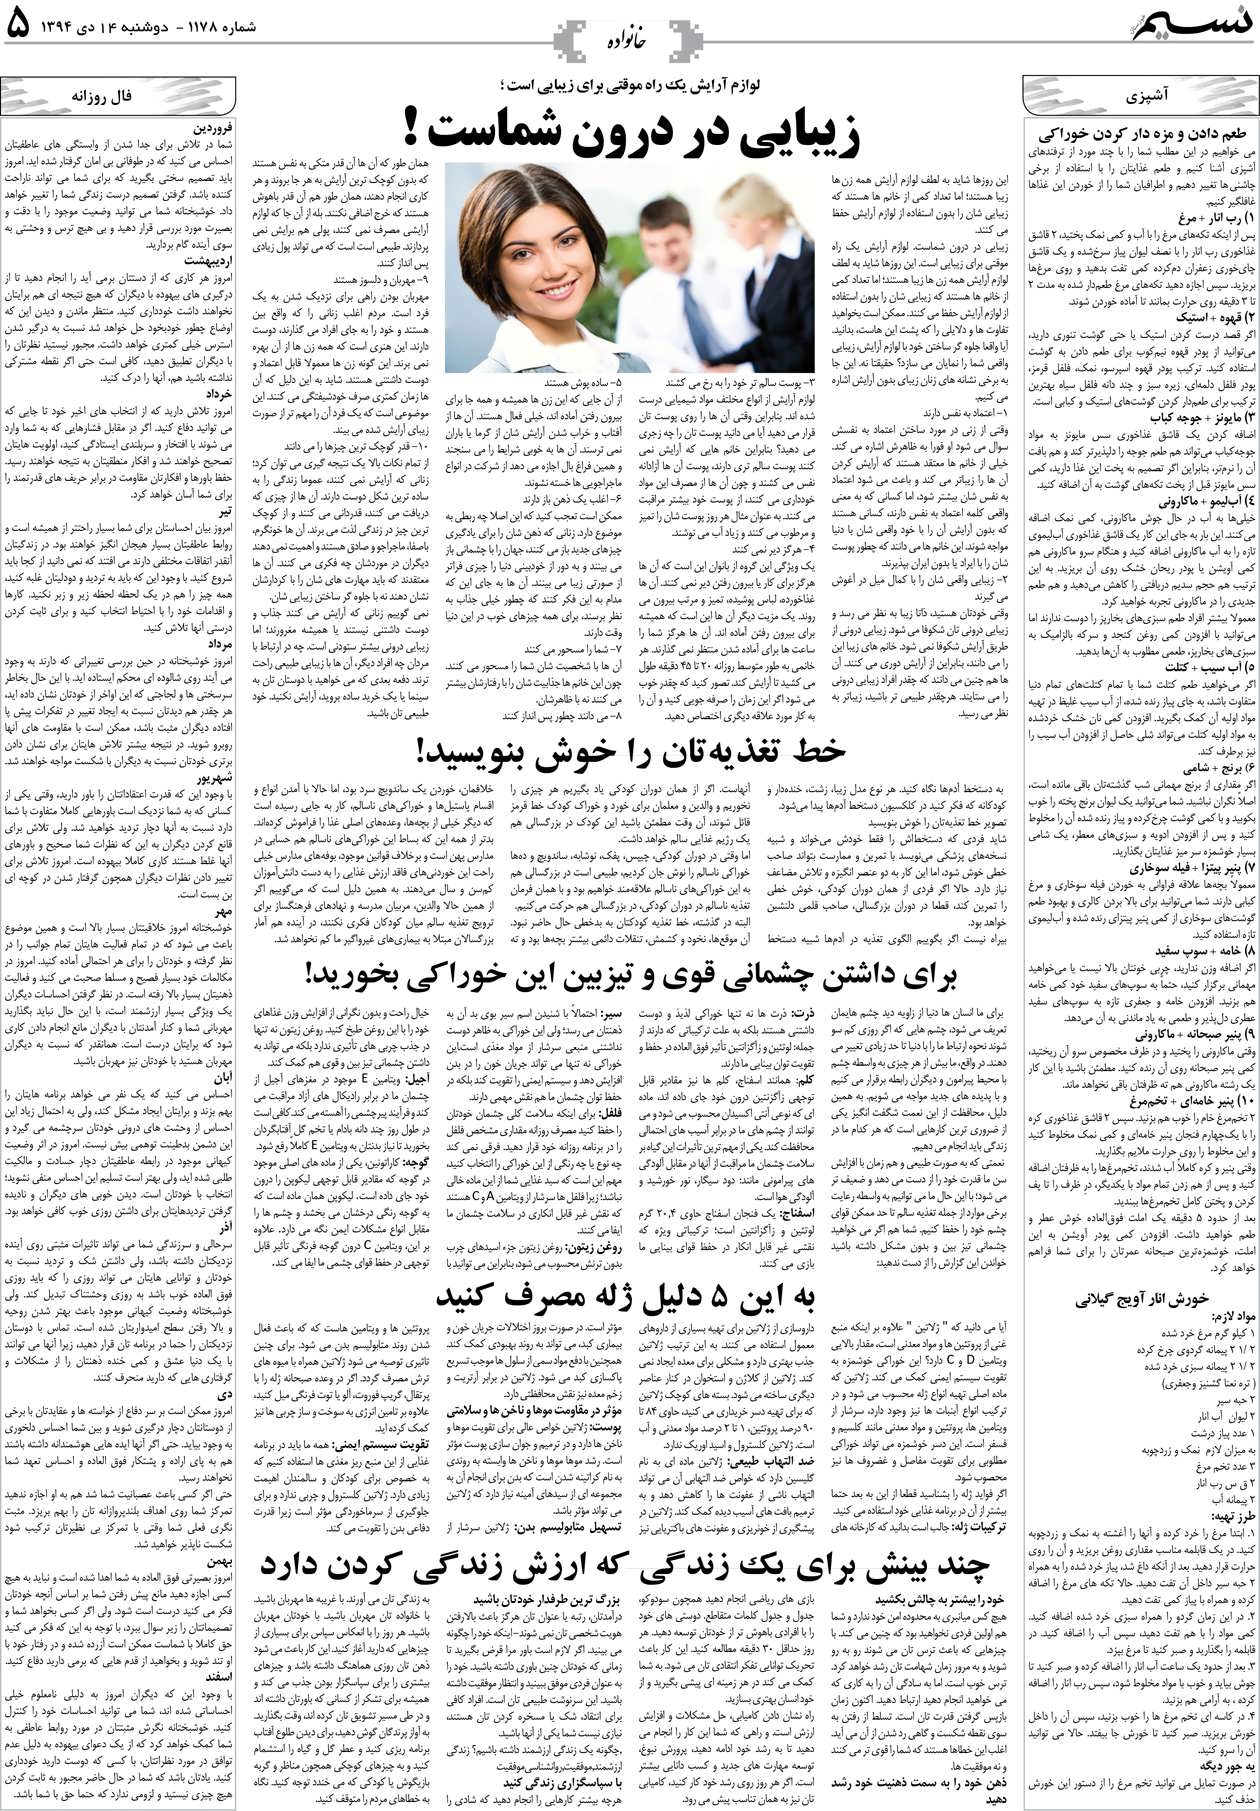 صفحه خانواده روزنامه نسیم شماره 1178